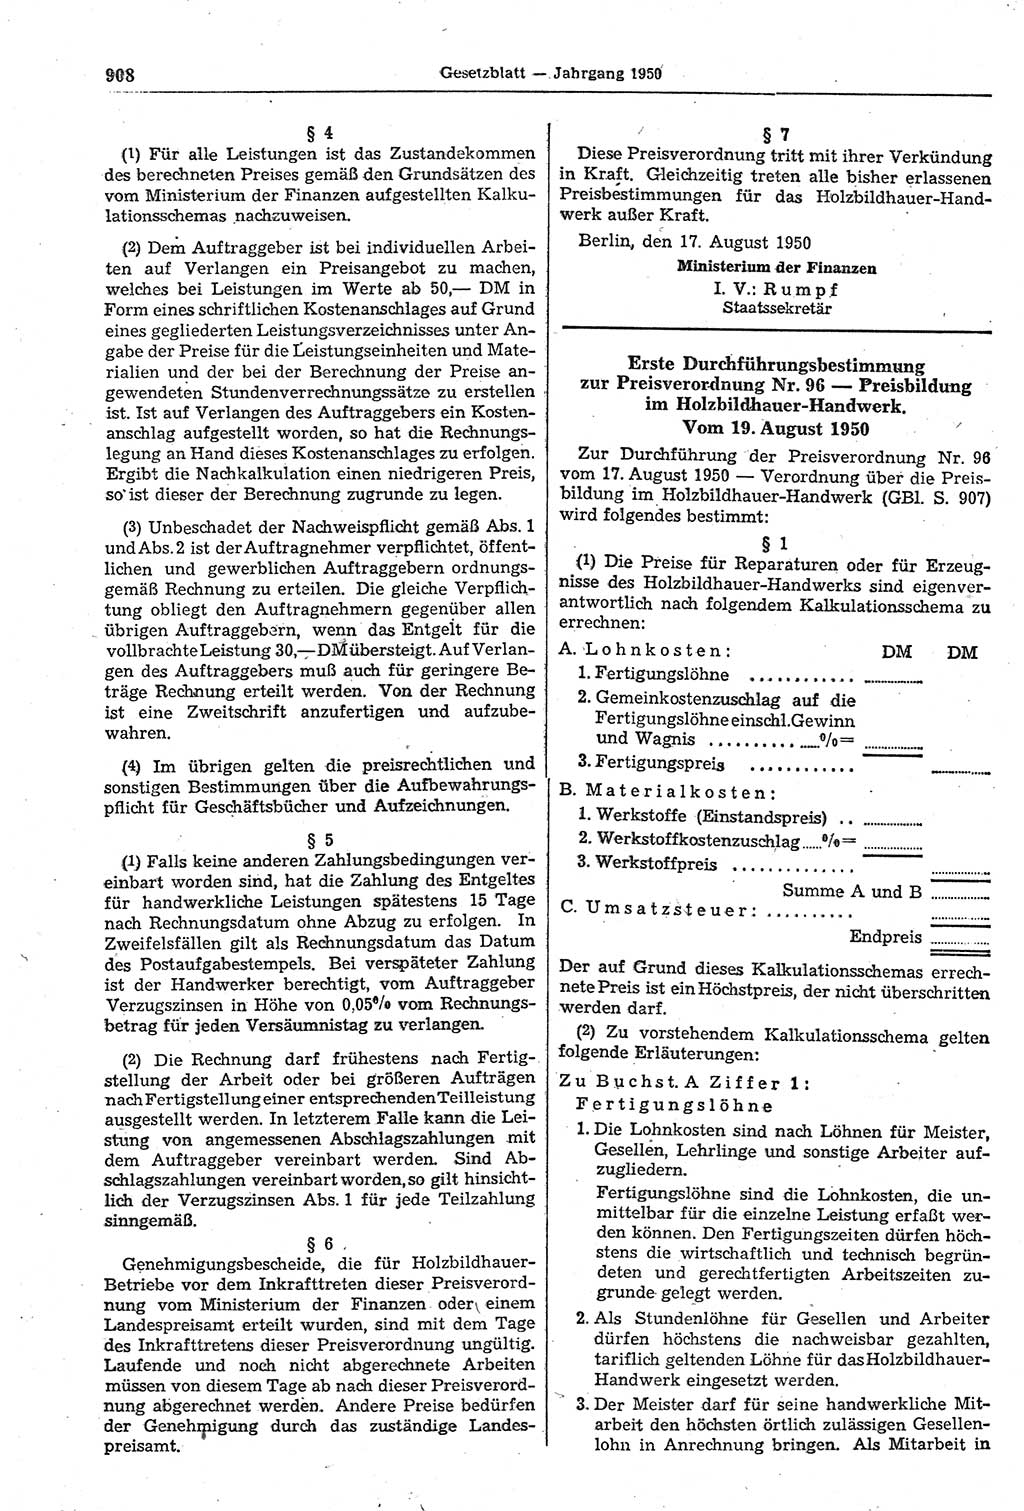 Gesetzblatt (GBl.) der Deutschen Demokratischen Republik (DDR) 1950, Seite 908 (GBl. DDR 1950, S. 908)